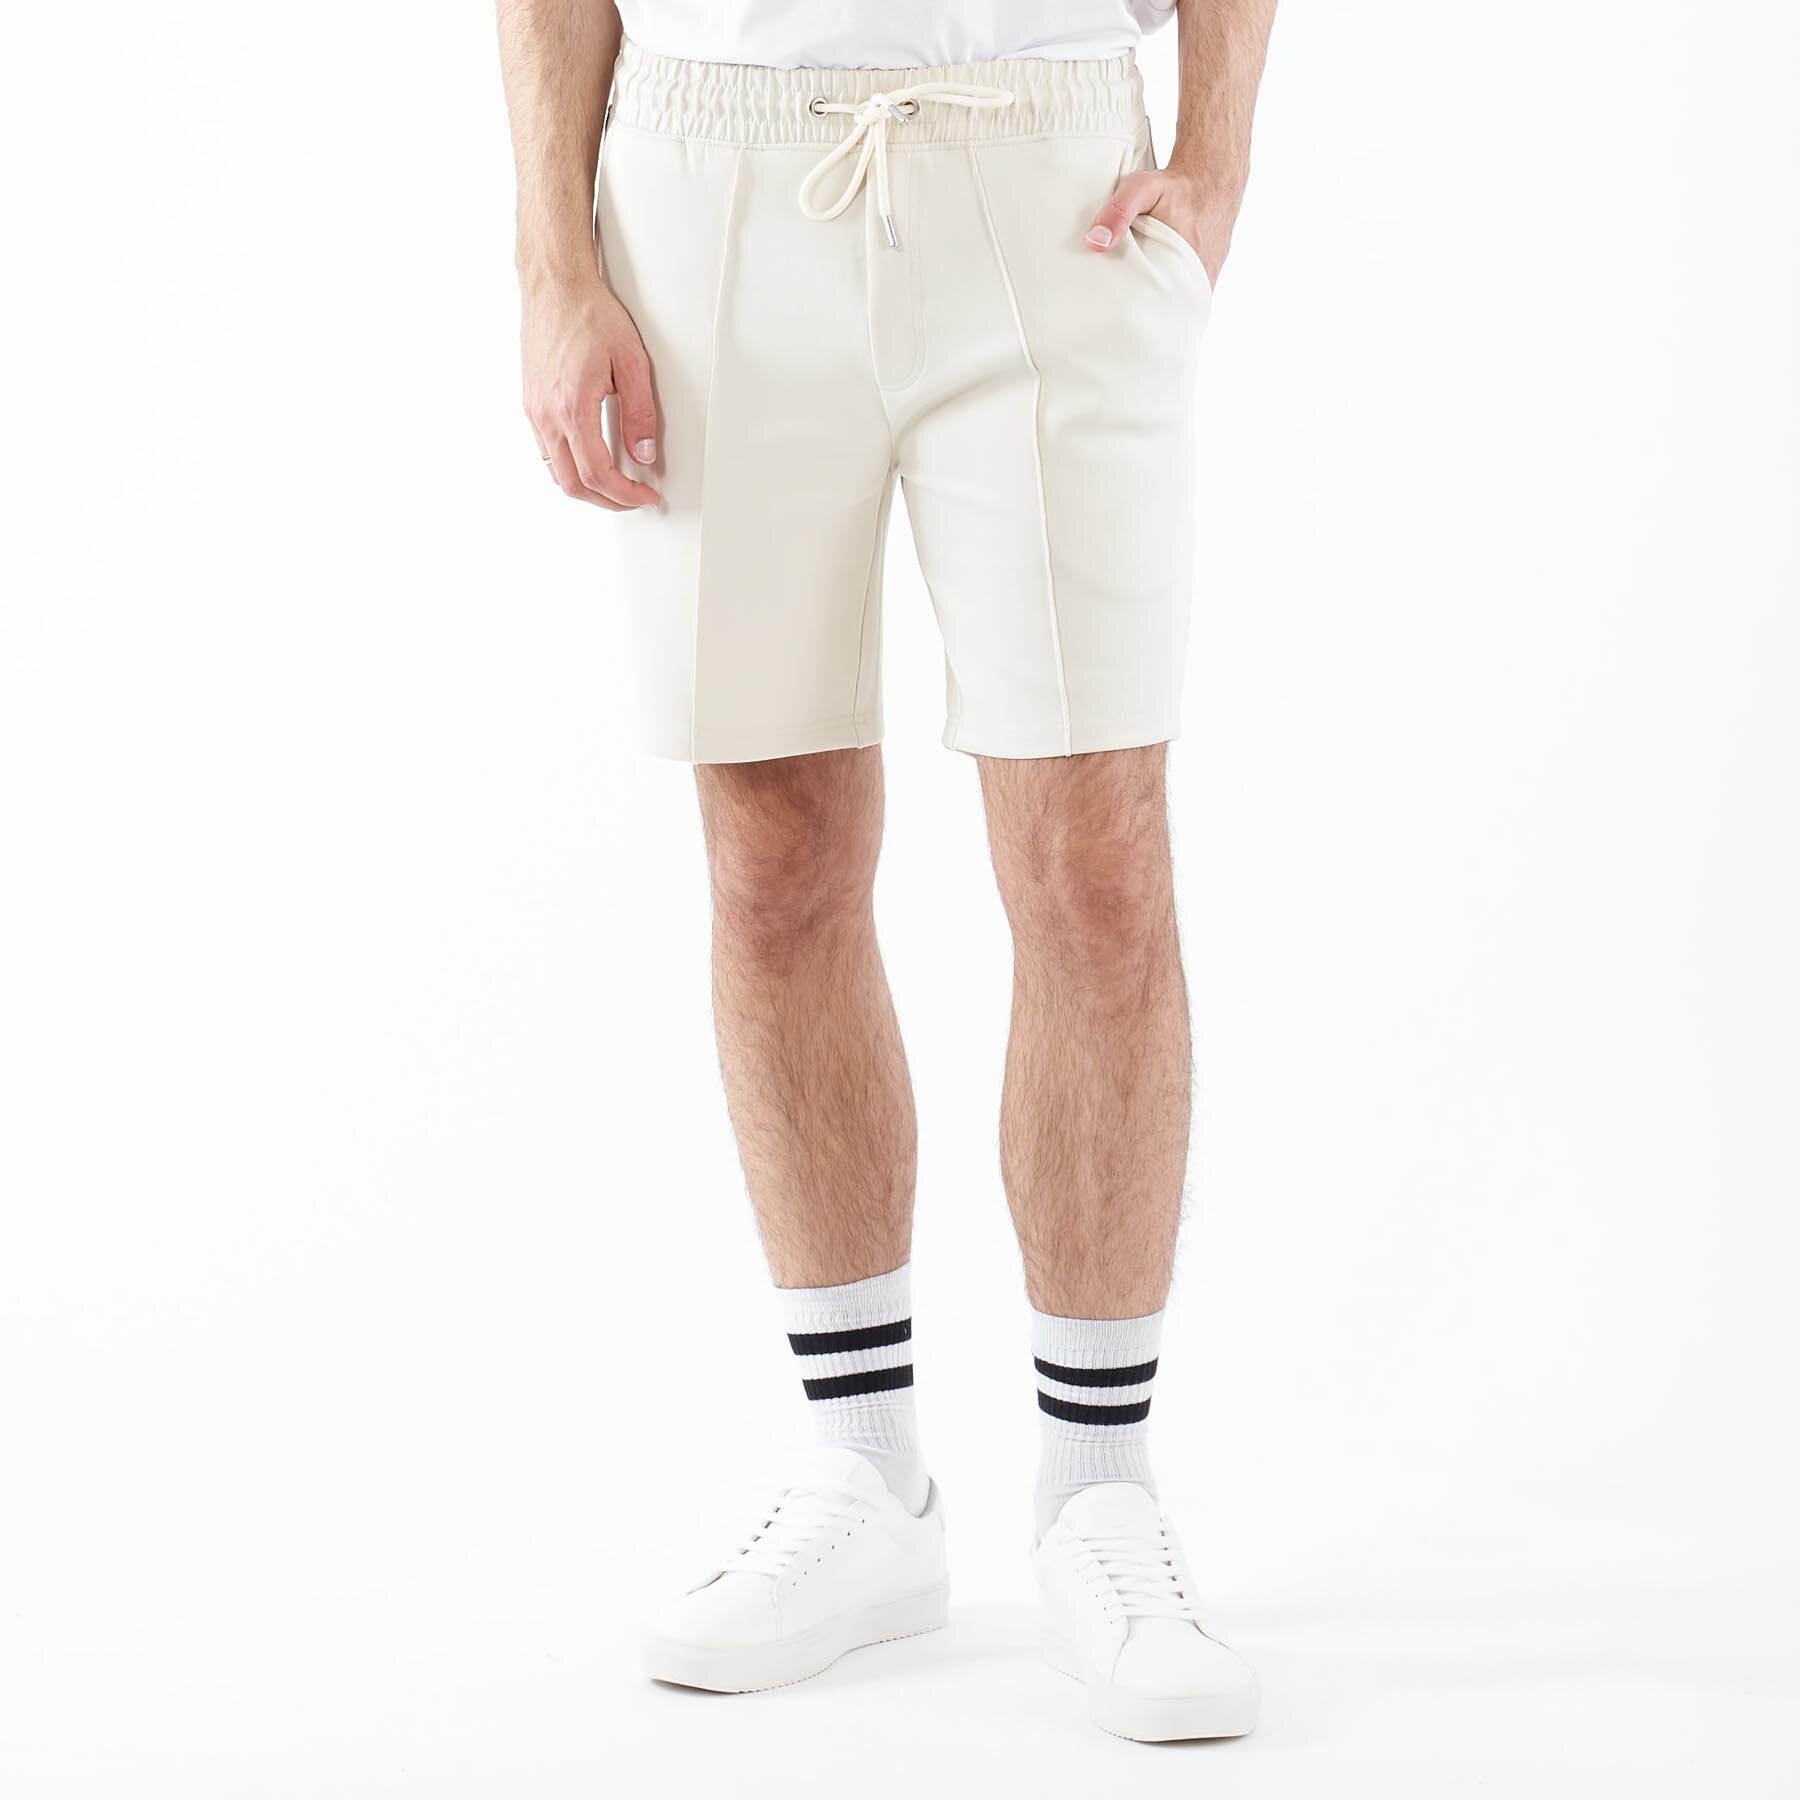 Black rebel - Pierre shorts - Herreshorts - A/ ANTIQUE WHITE - XXL